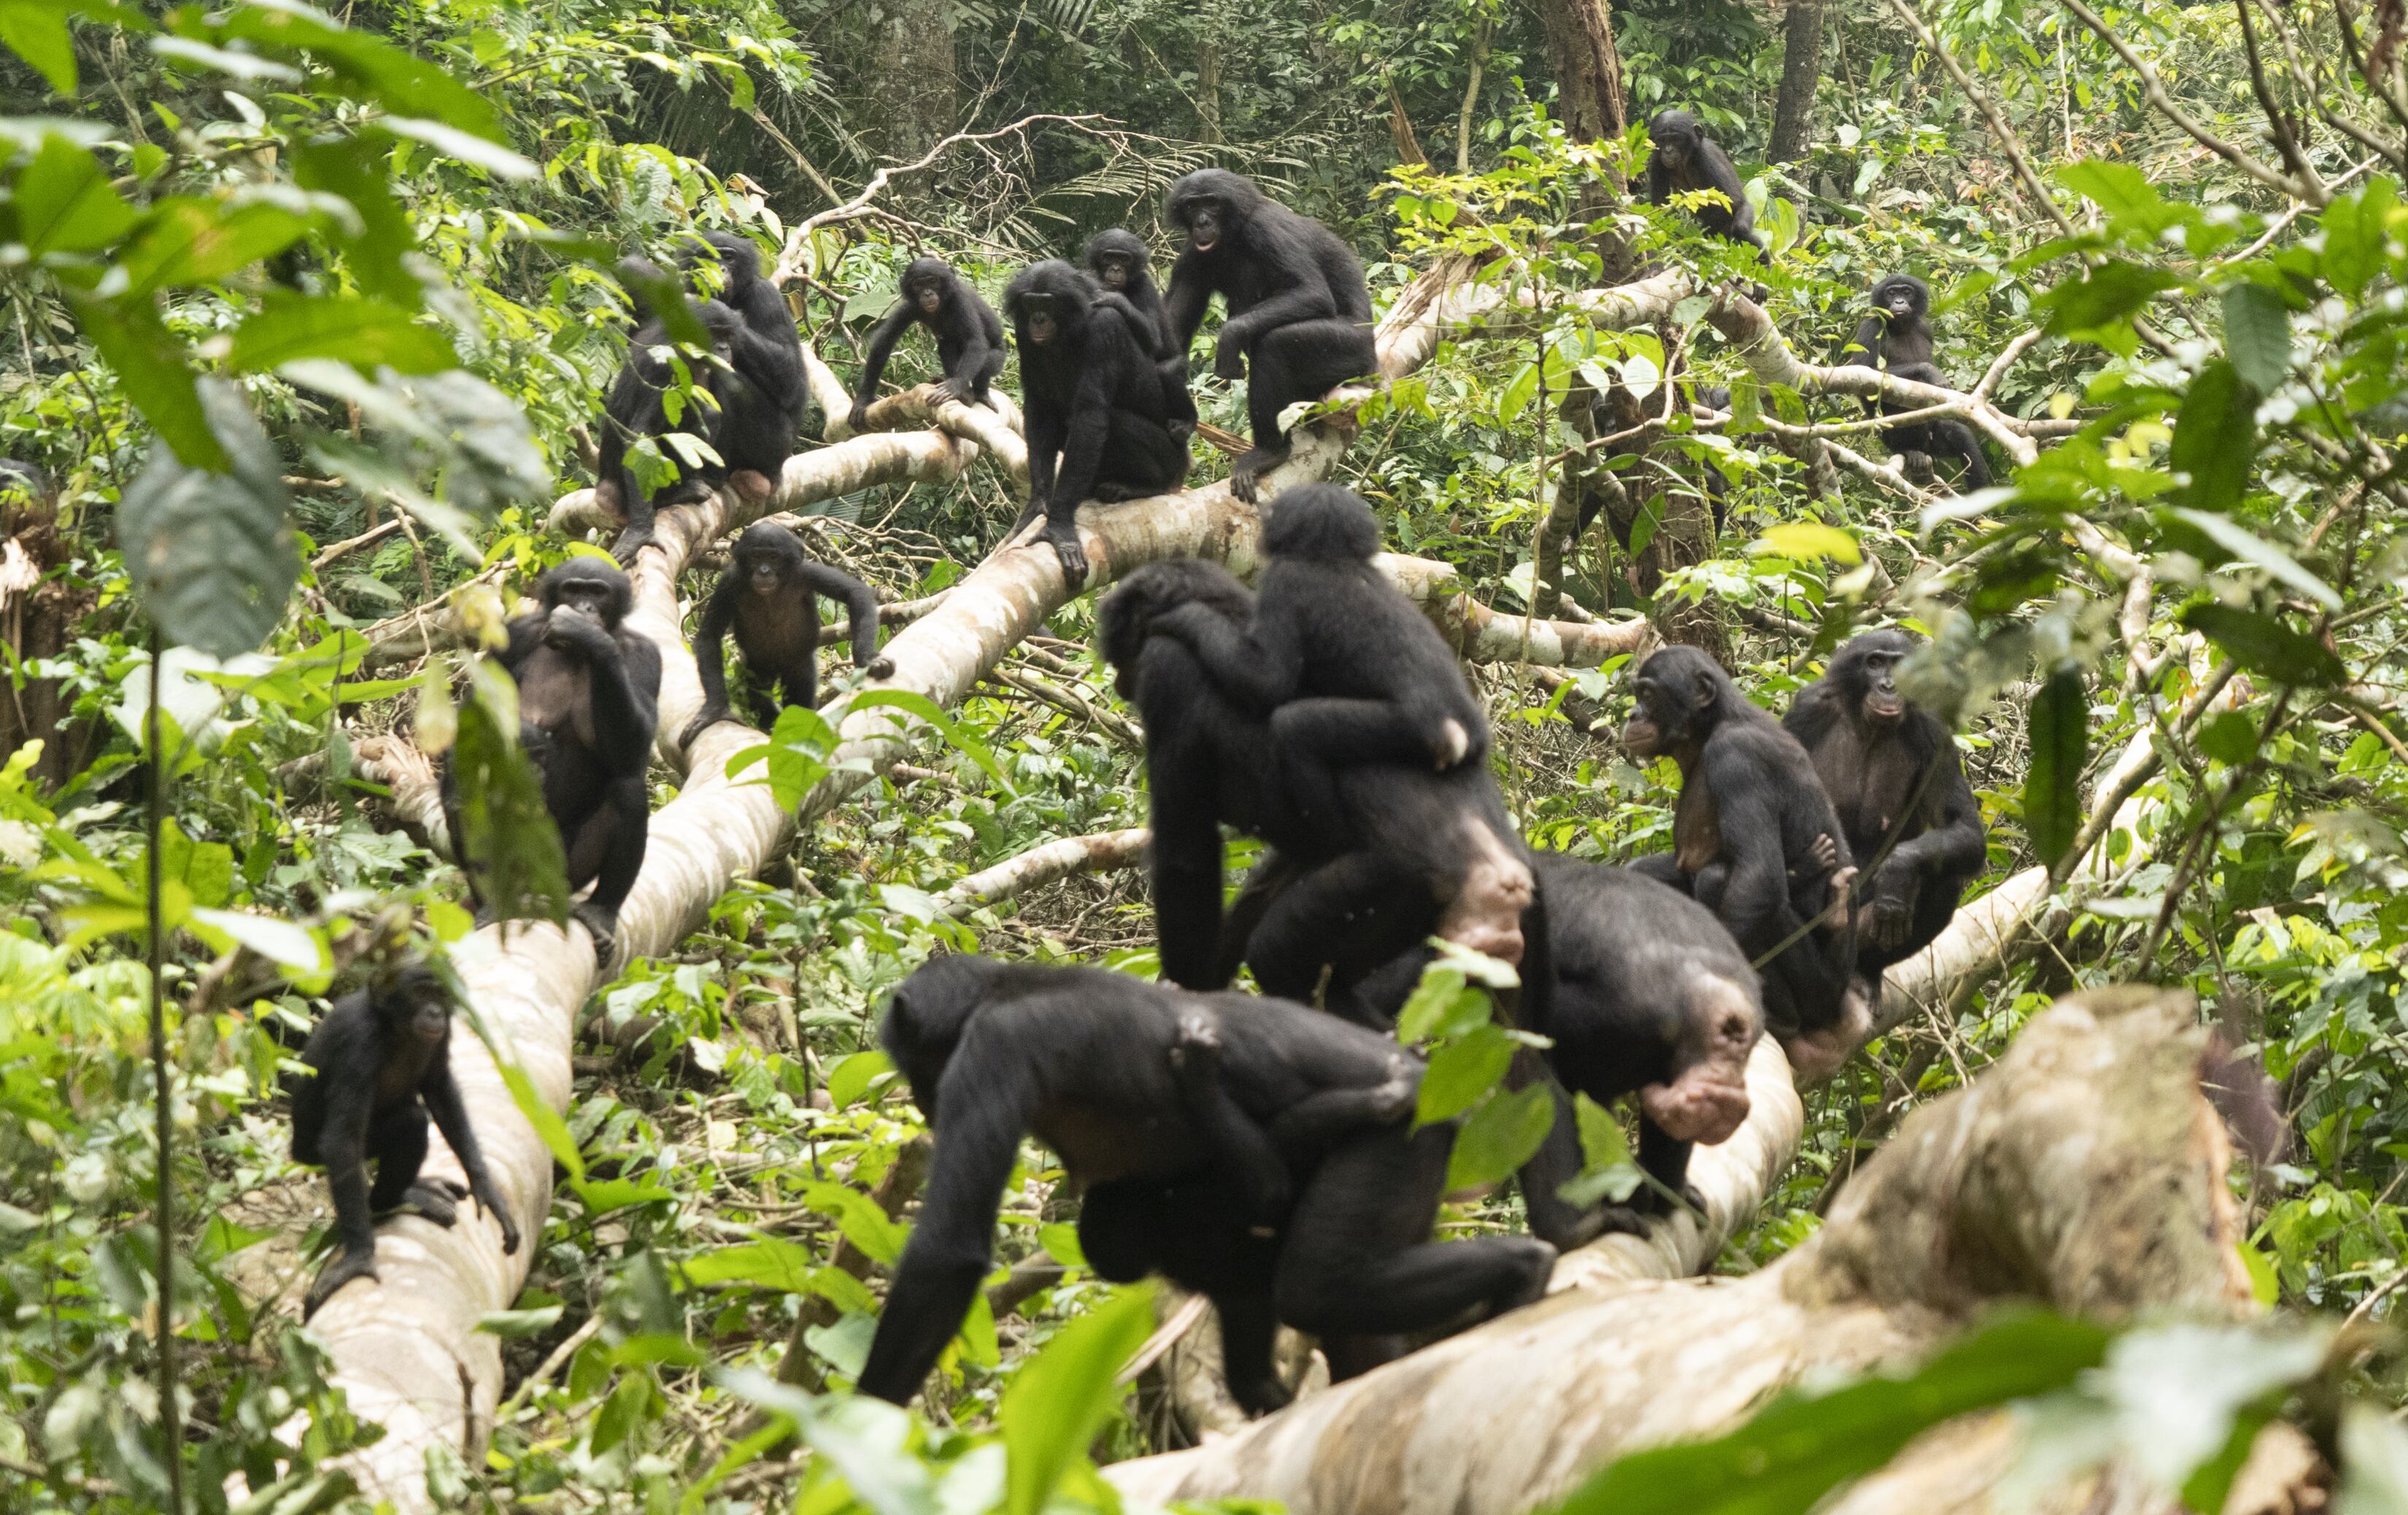 Encuentro pacífico entre dos comunidades de bonobos.